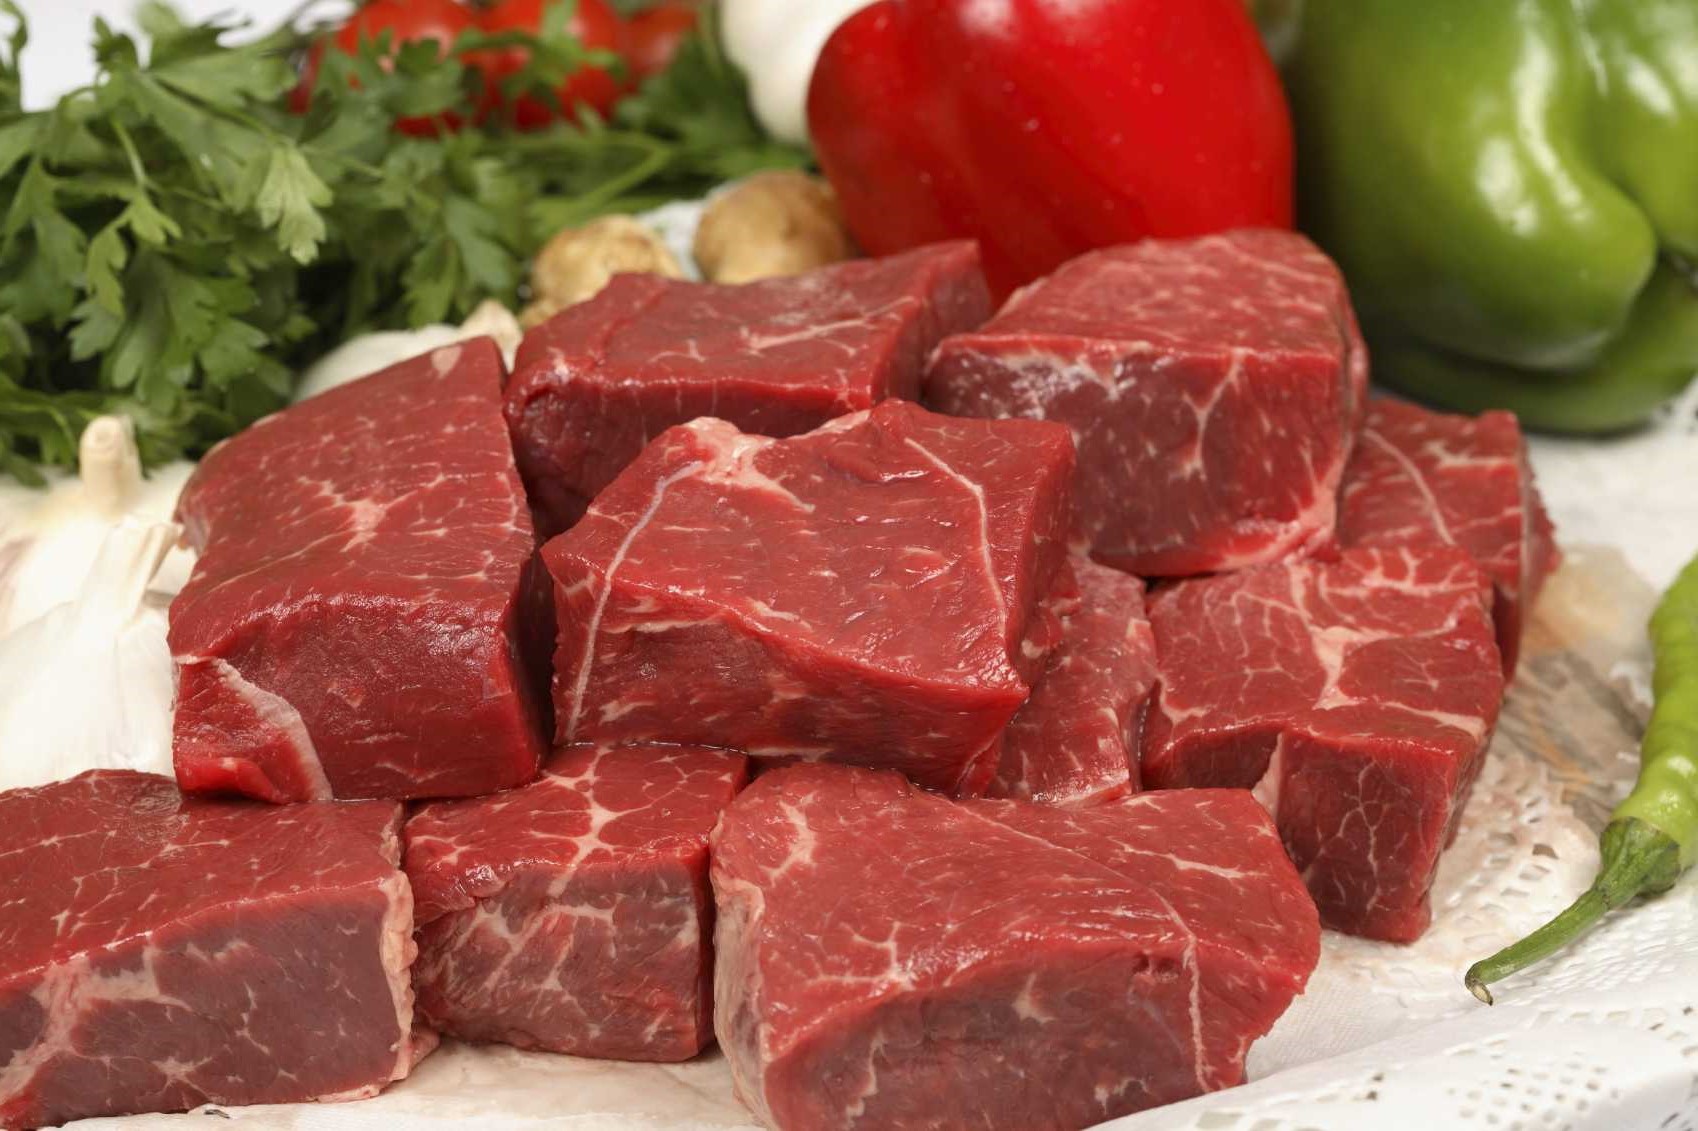 اللحوم البقرية الحمراء علاج ضعف الانتصاب بالاكل